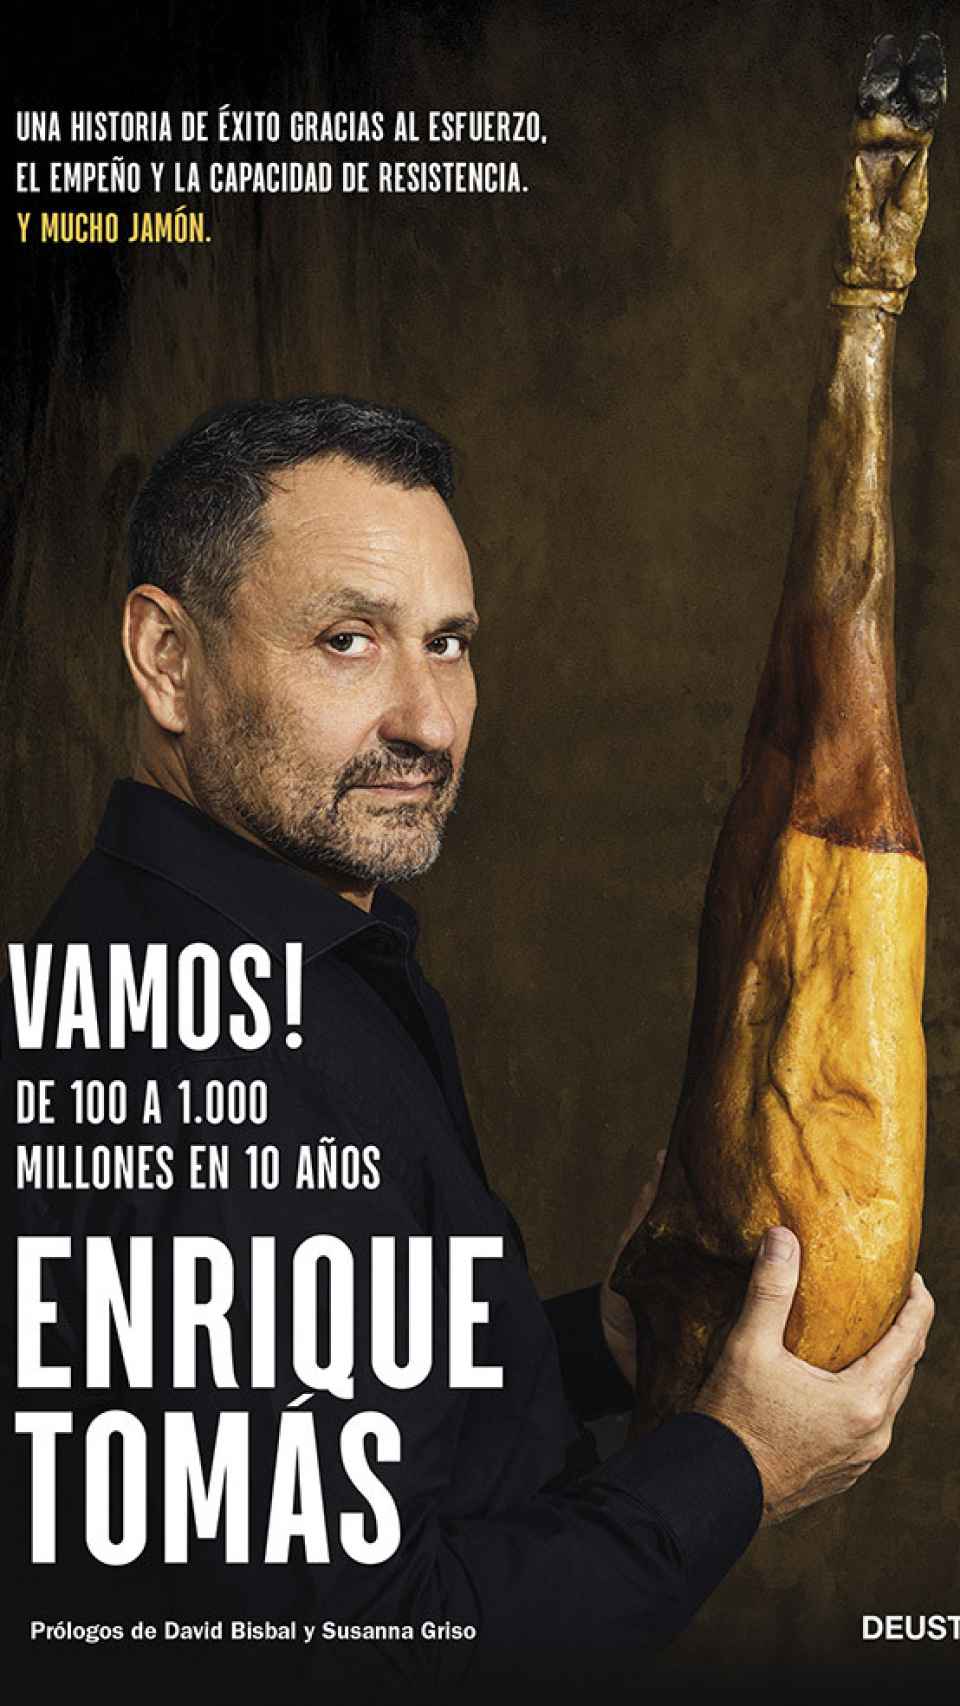 El jamonero Enrique Tomás lanza su segundo libro